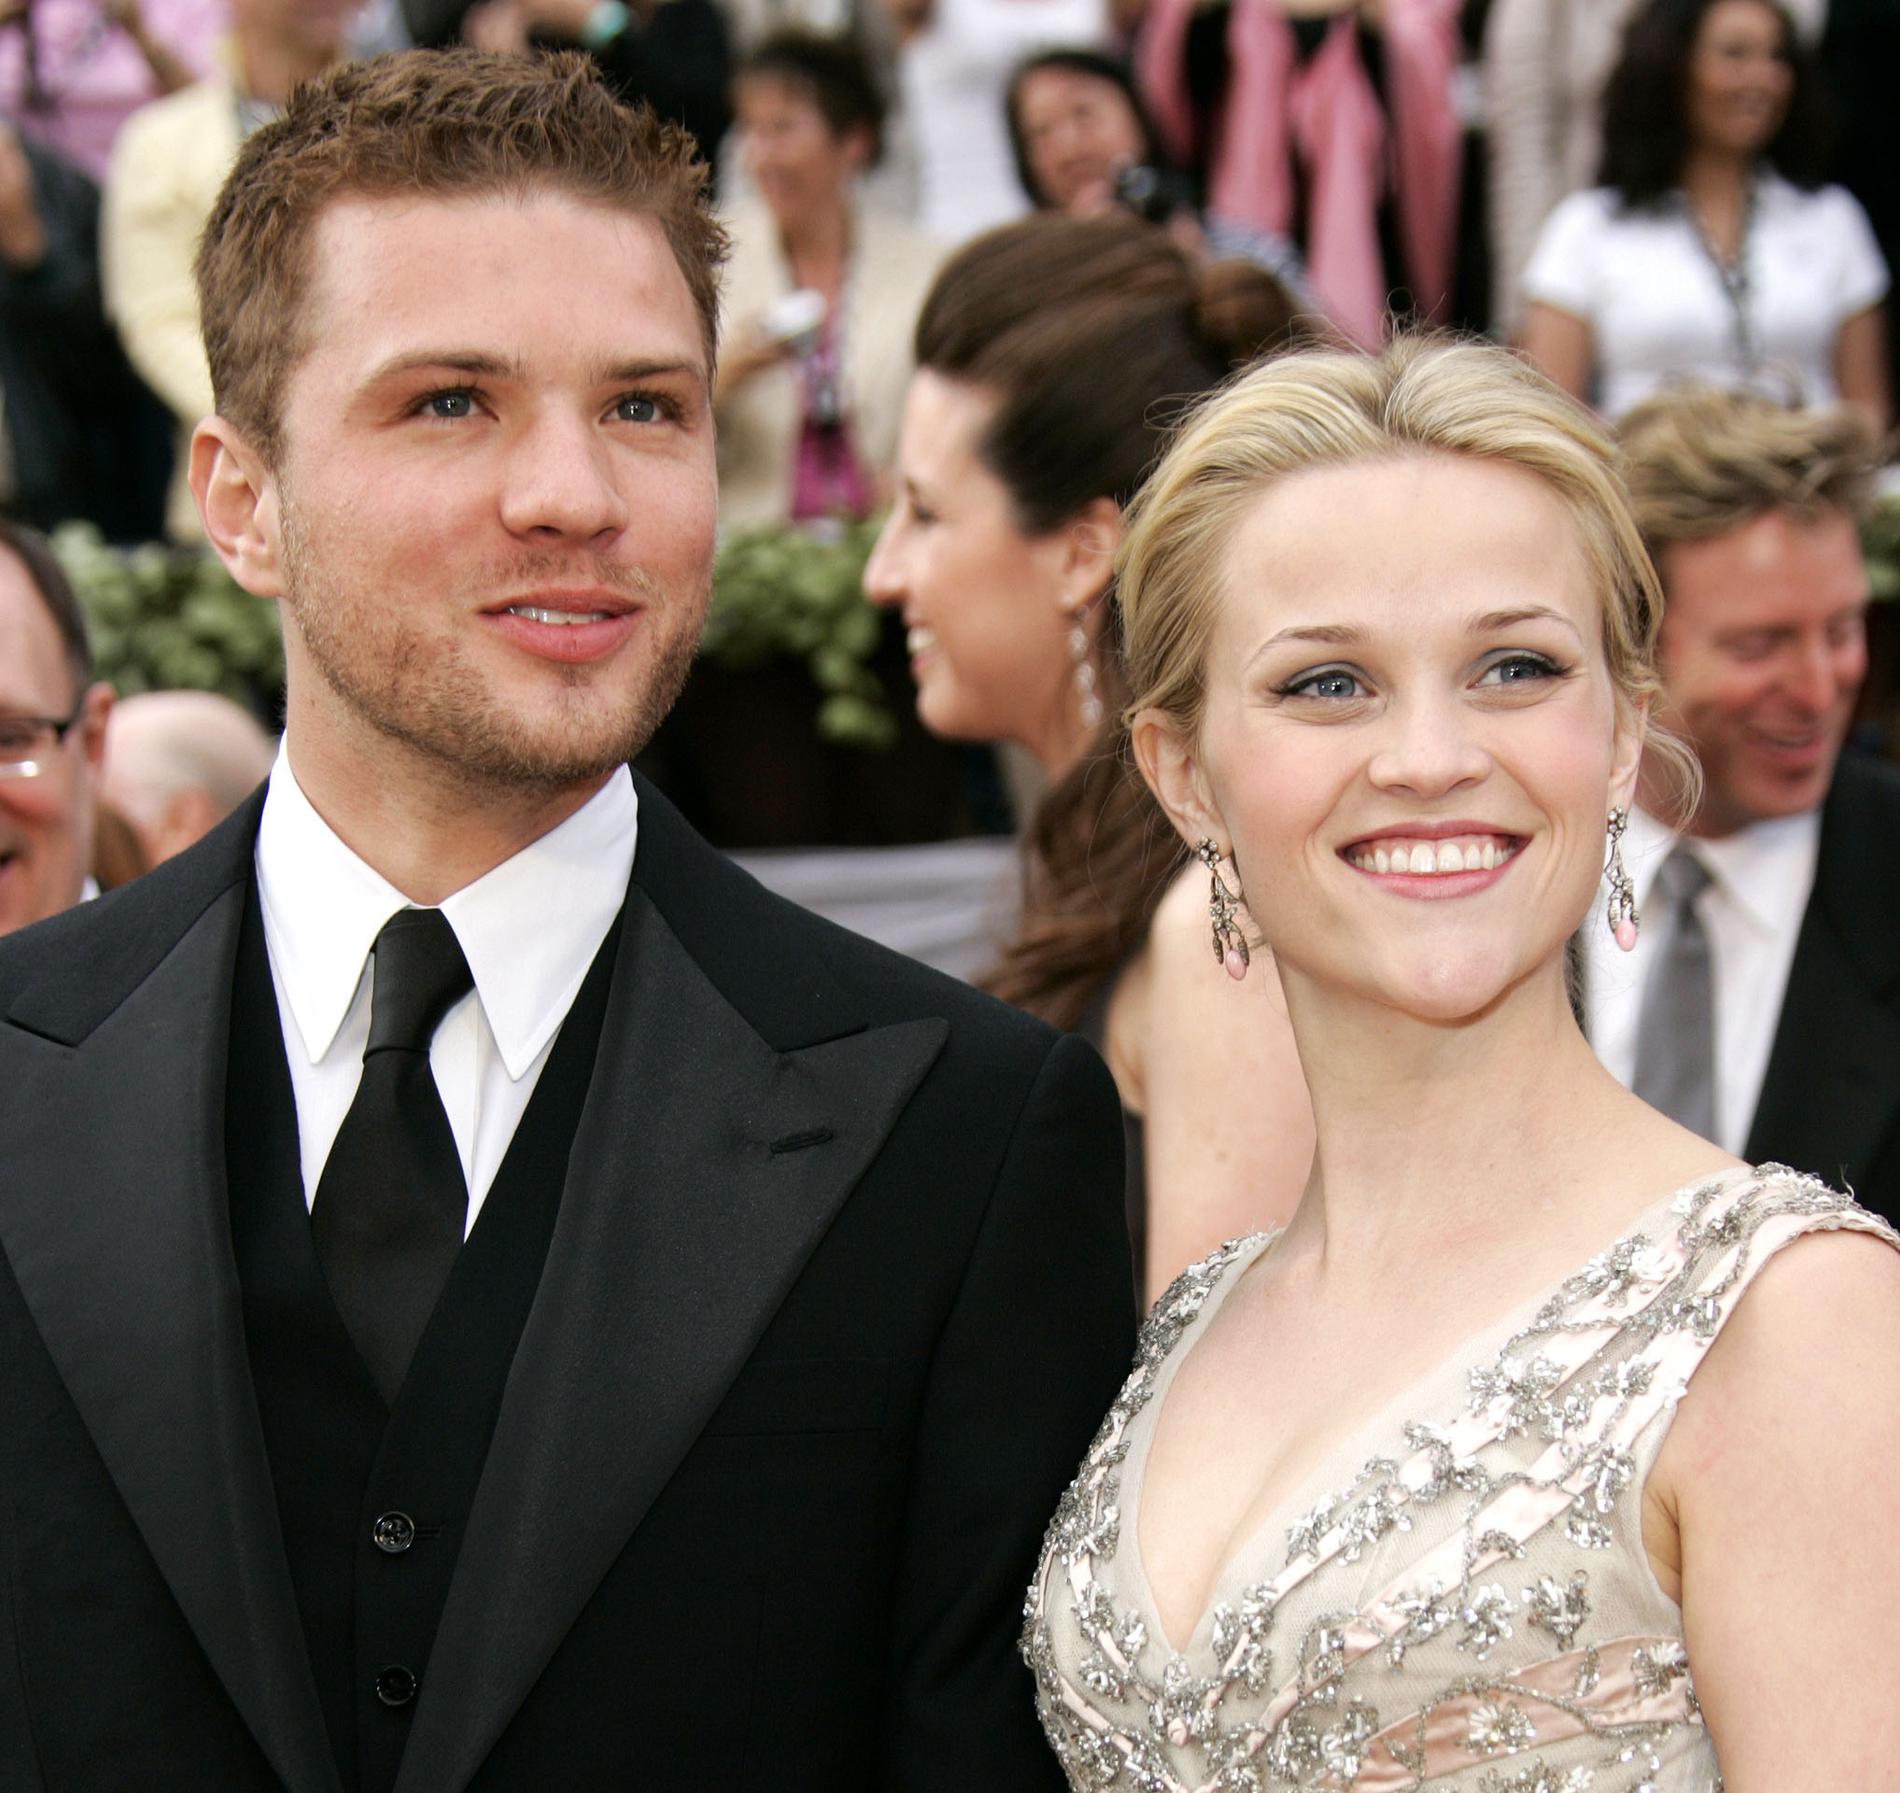 1997-2006 var Reese och Ryan Phillippe ett av Hollywoods hetaste par. Men efter otrohetsrykten gick äktenskapet inte att rädda.